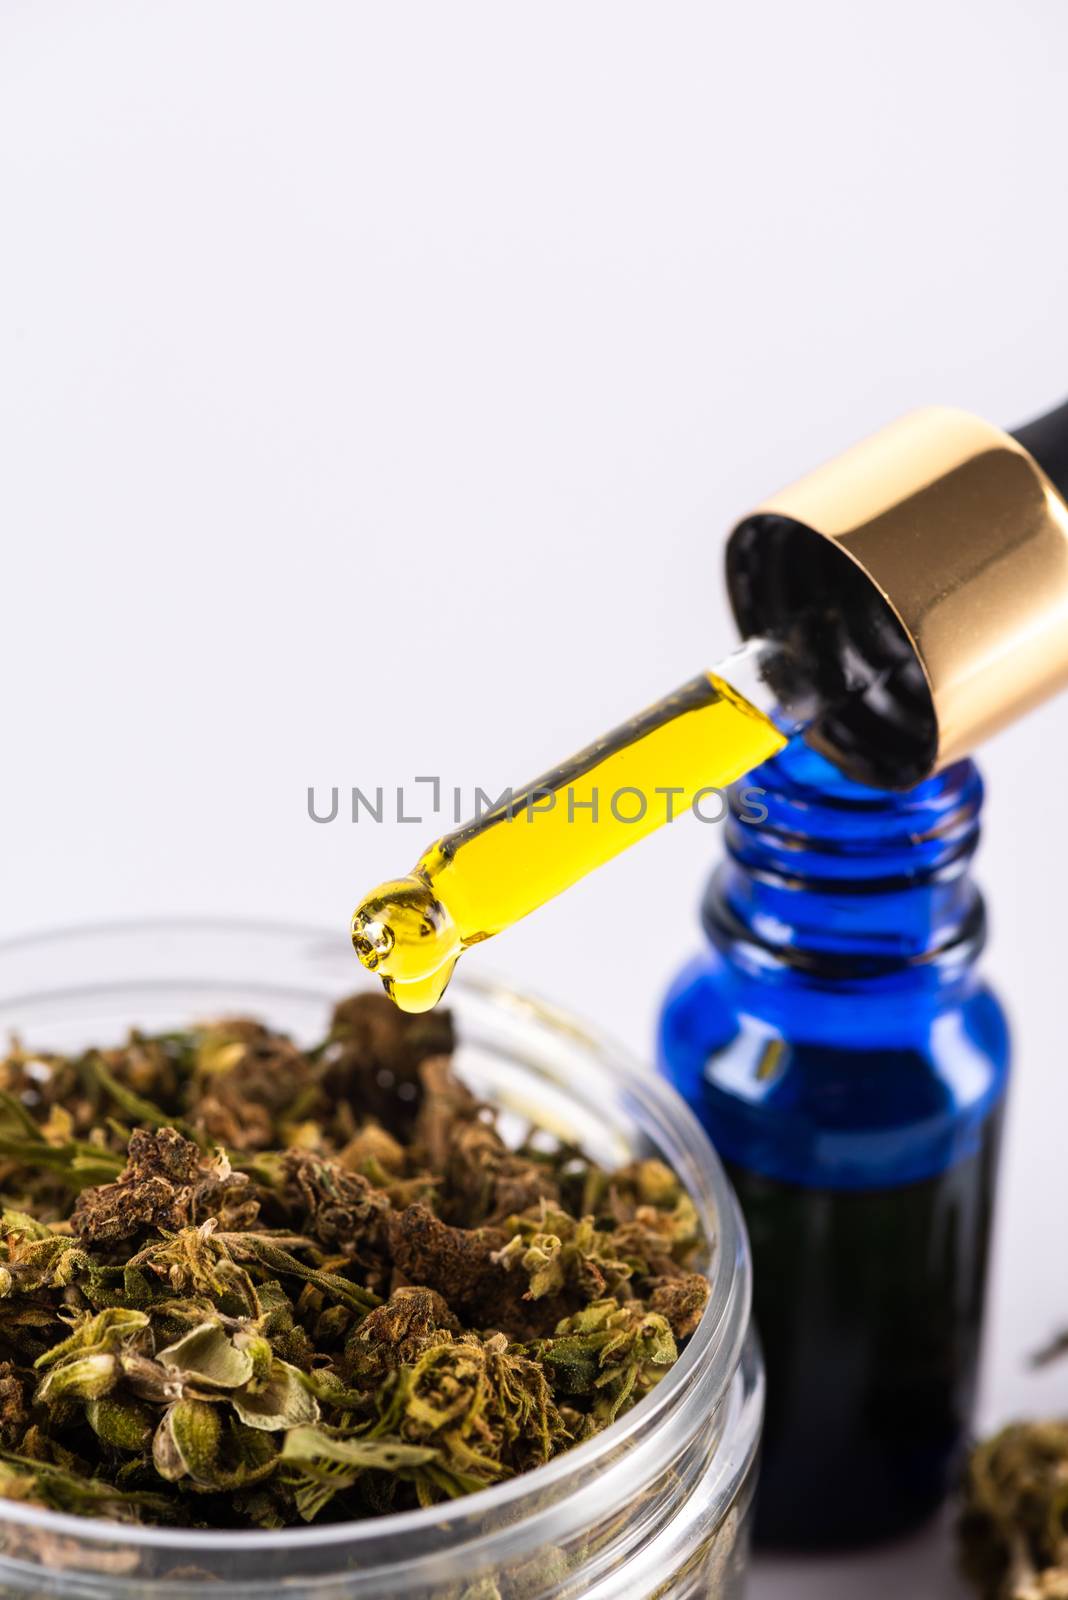 Droplet with CBD Cannabidiol Oil. Medical Marijuana and Cannabis Use Concept.